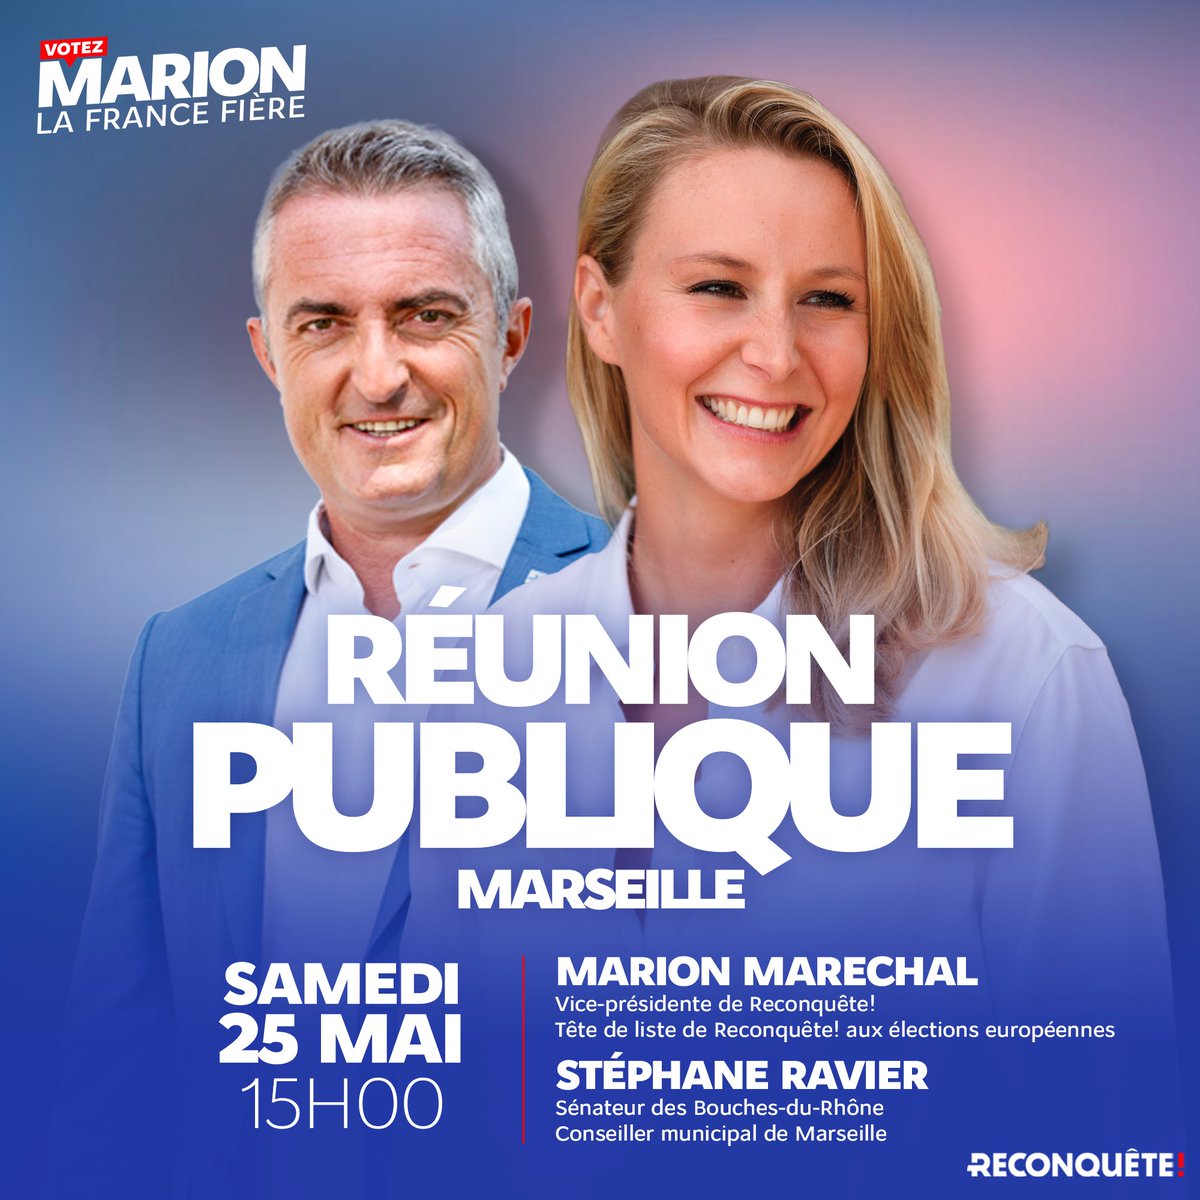 🇫🇷 Nous vous retrouvons avec @Stephane_Ravier ce samedi 25 mai à #Marseille pour une réunion publique ! Infos et inscriptions 👉 my.weezevent.com/reunion-publiq… #VotezMarion